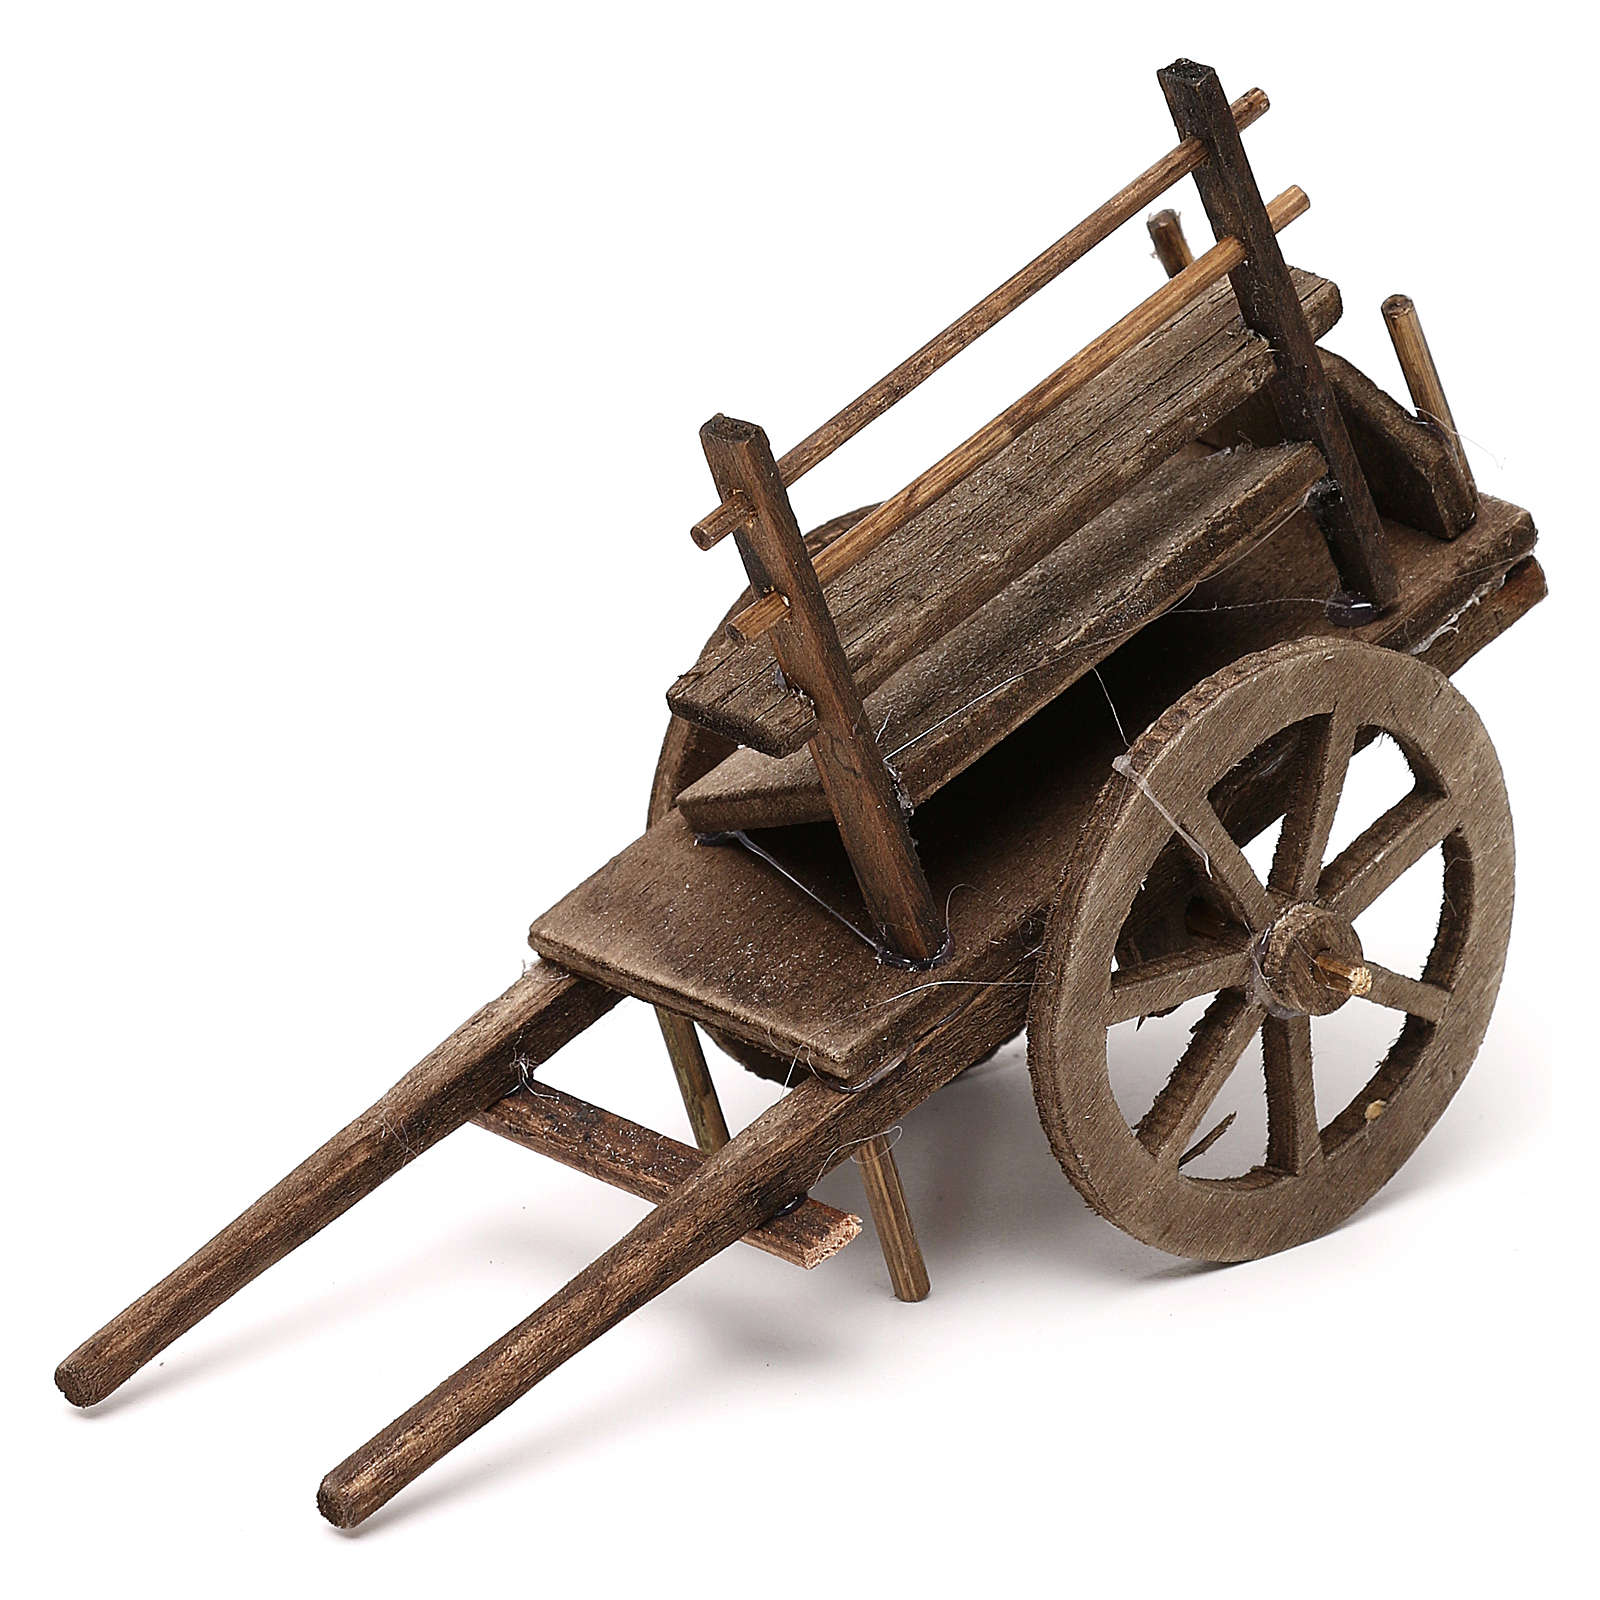 wooden push cart